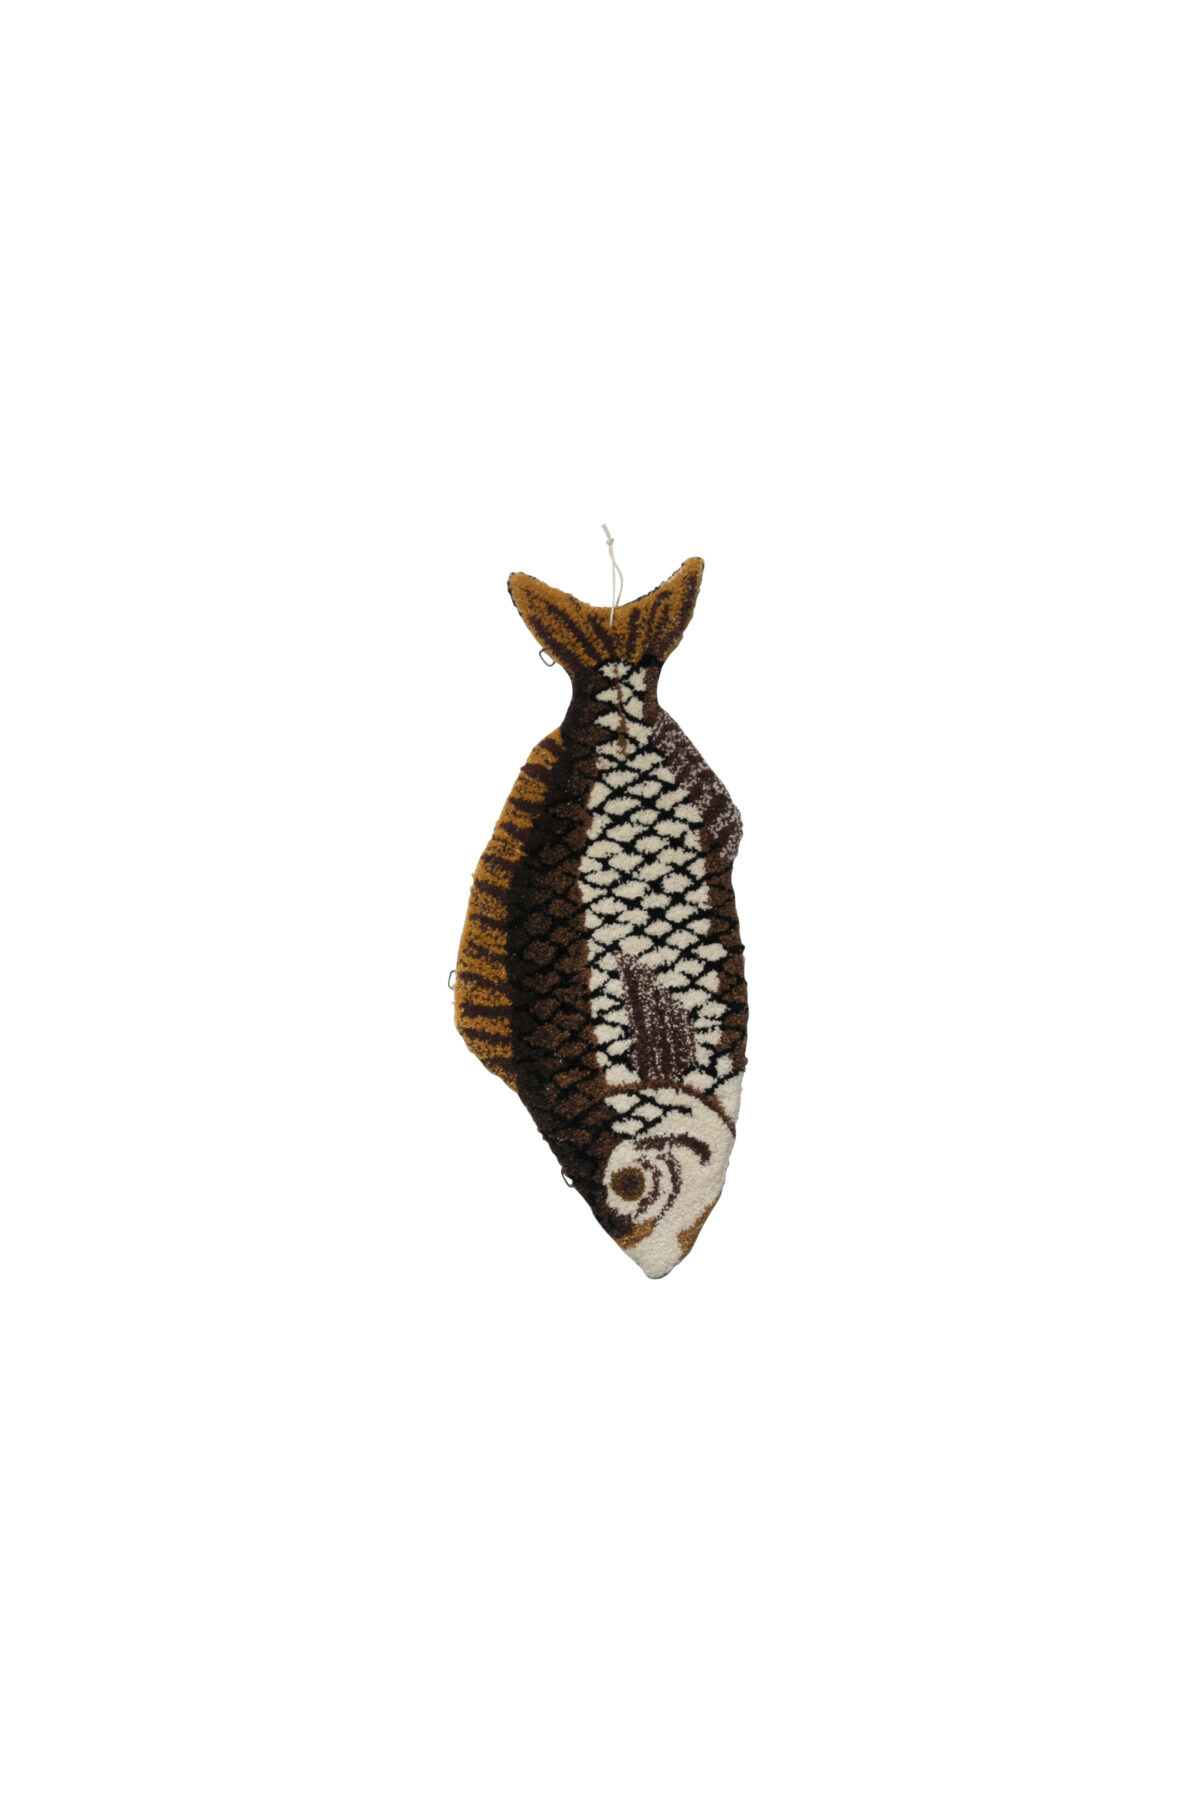 Wall hanger fish ‘Bowy’, small-1